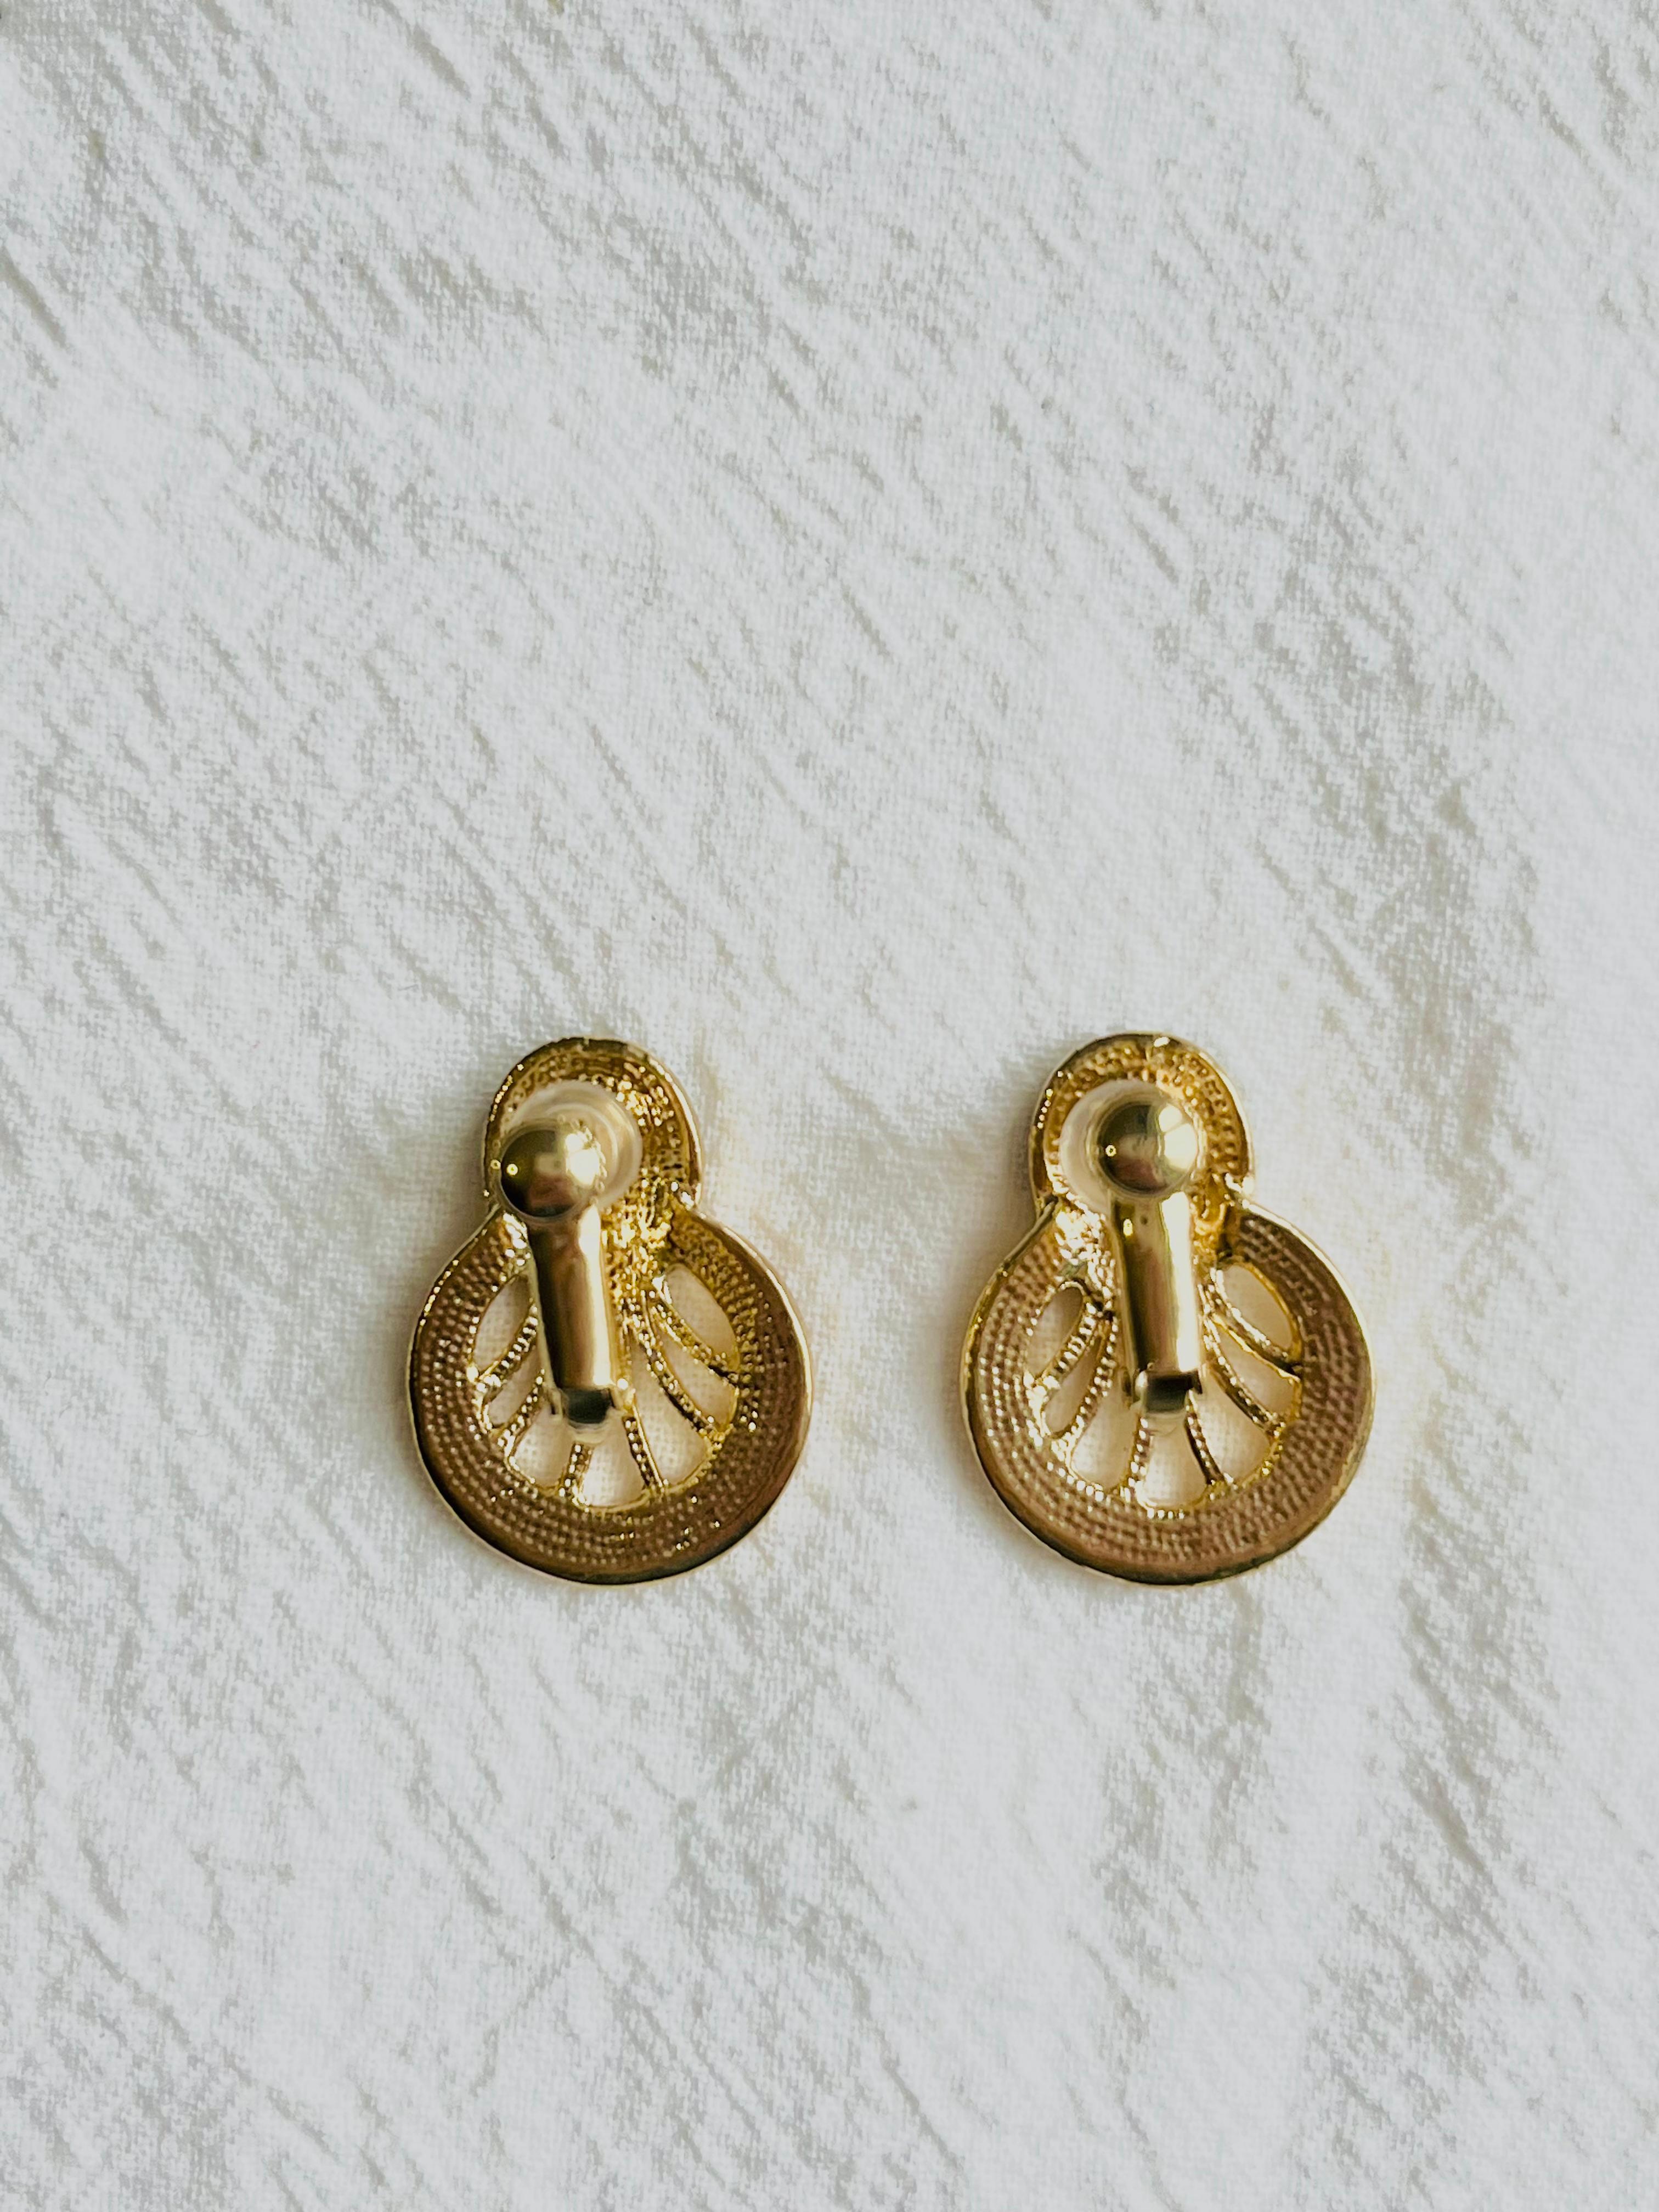 Black Oval Enamel Openwork Hollow Circle Fan Gold  Retro Elegant Clip Earrings For Sale 1